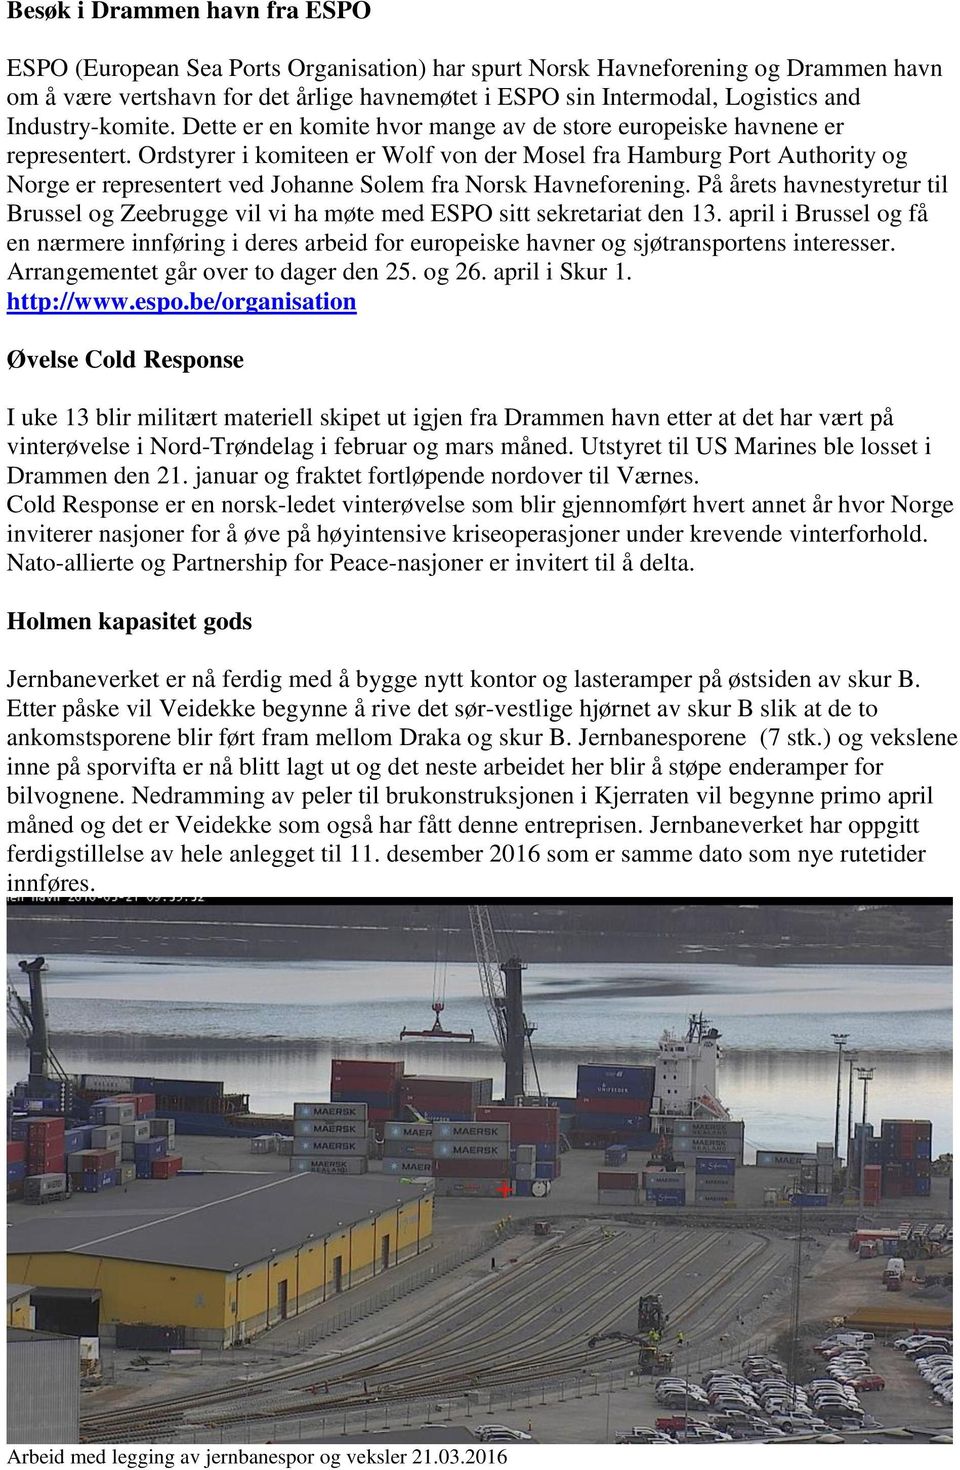 Ordstyrer i komiteen er Wolf von der Mosel fra Hamburg Port Authority og Norge er representert ved Johanne Solem fra Norsk Havneforening.